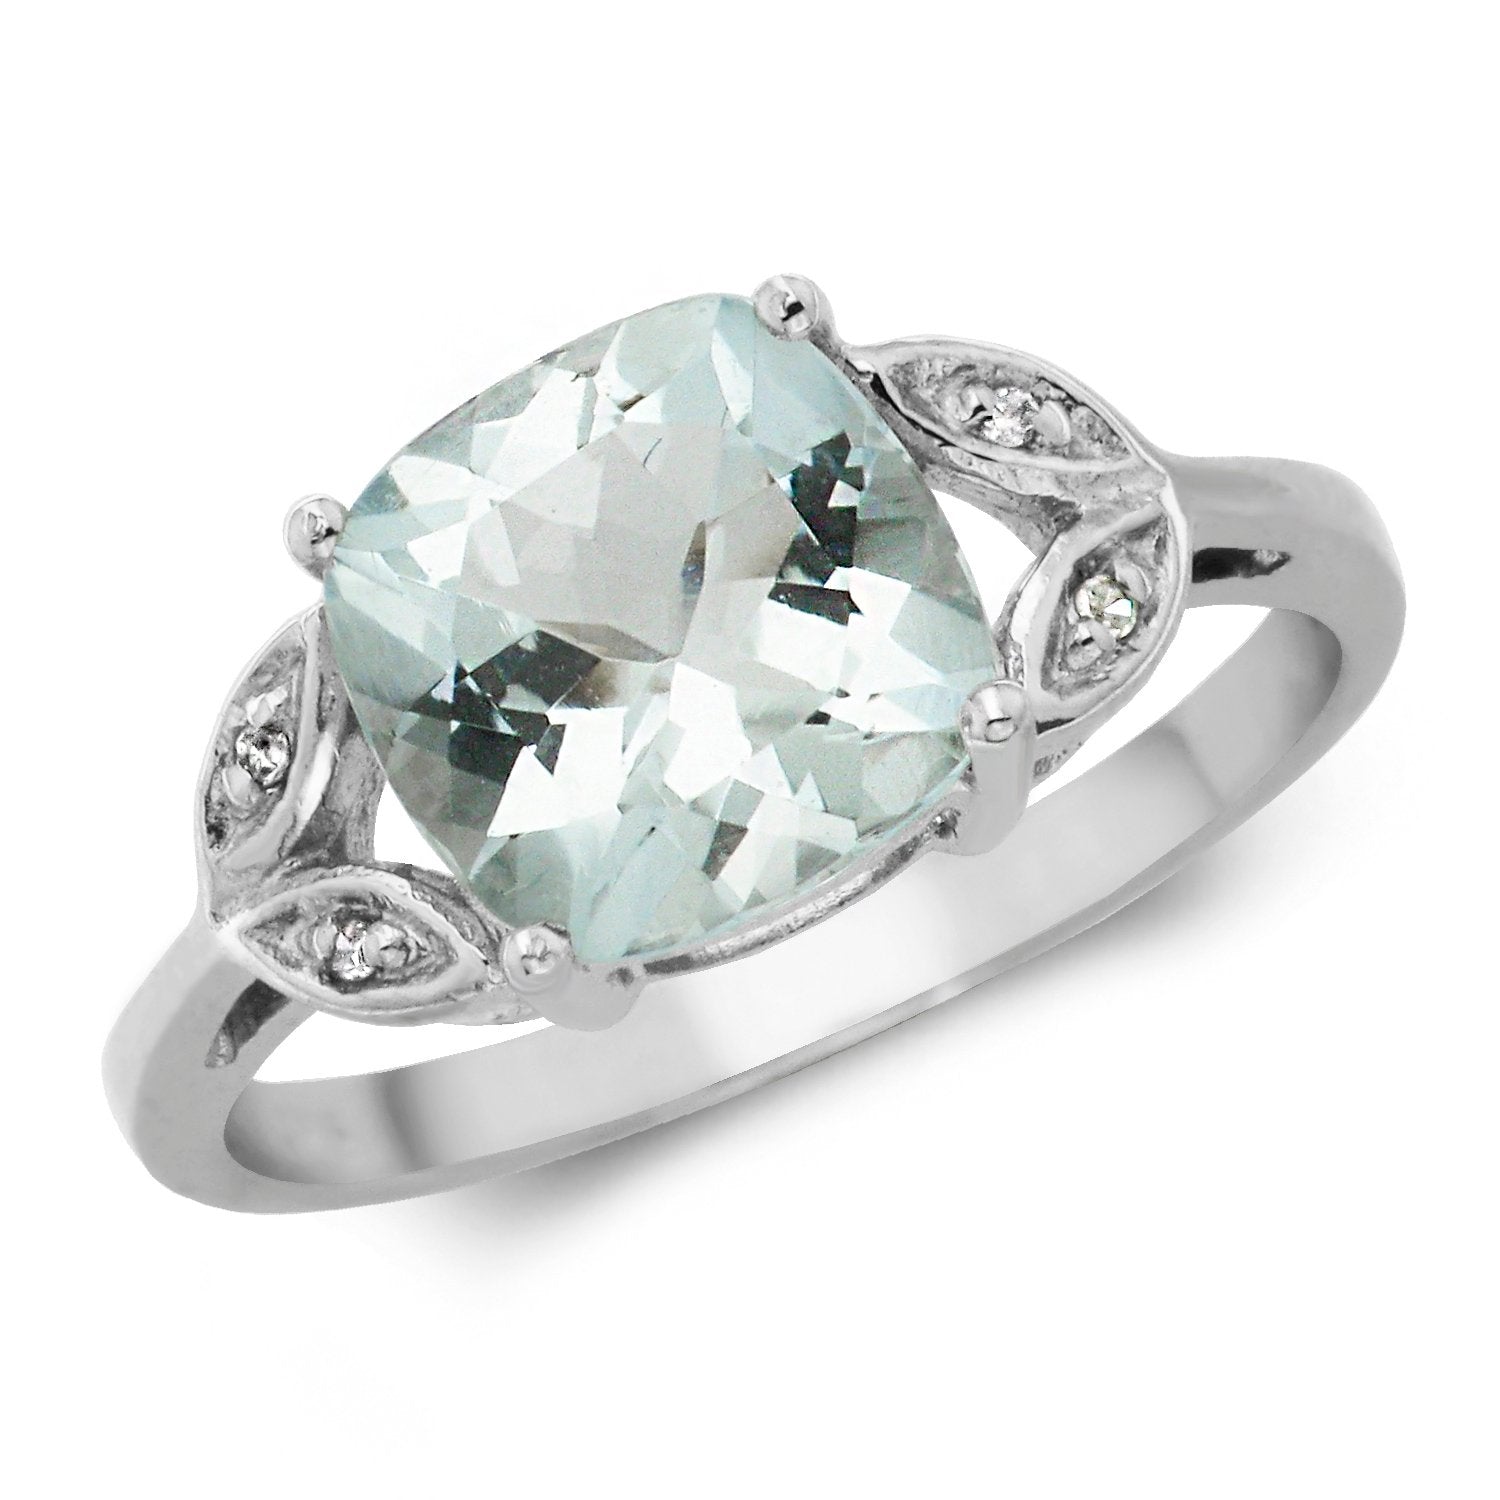 Aquamarine & Diamond Ring (Rd209waq)